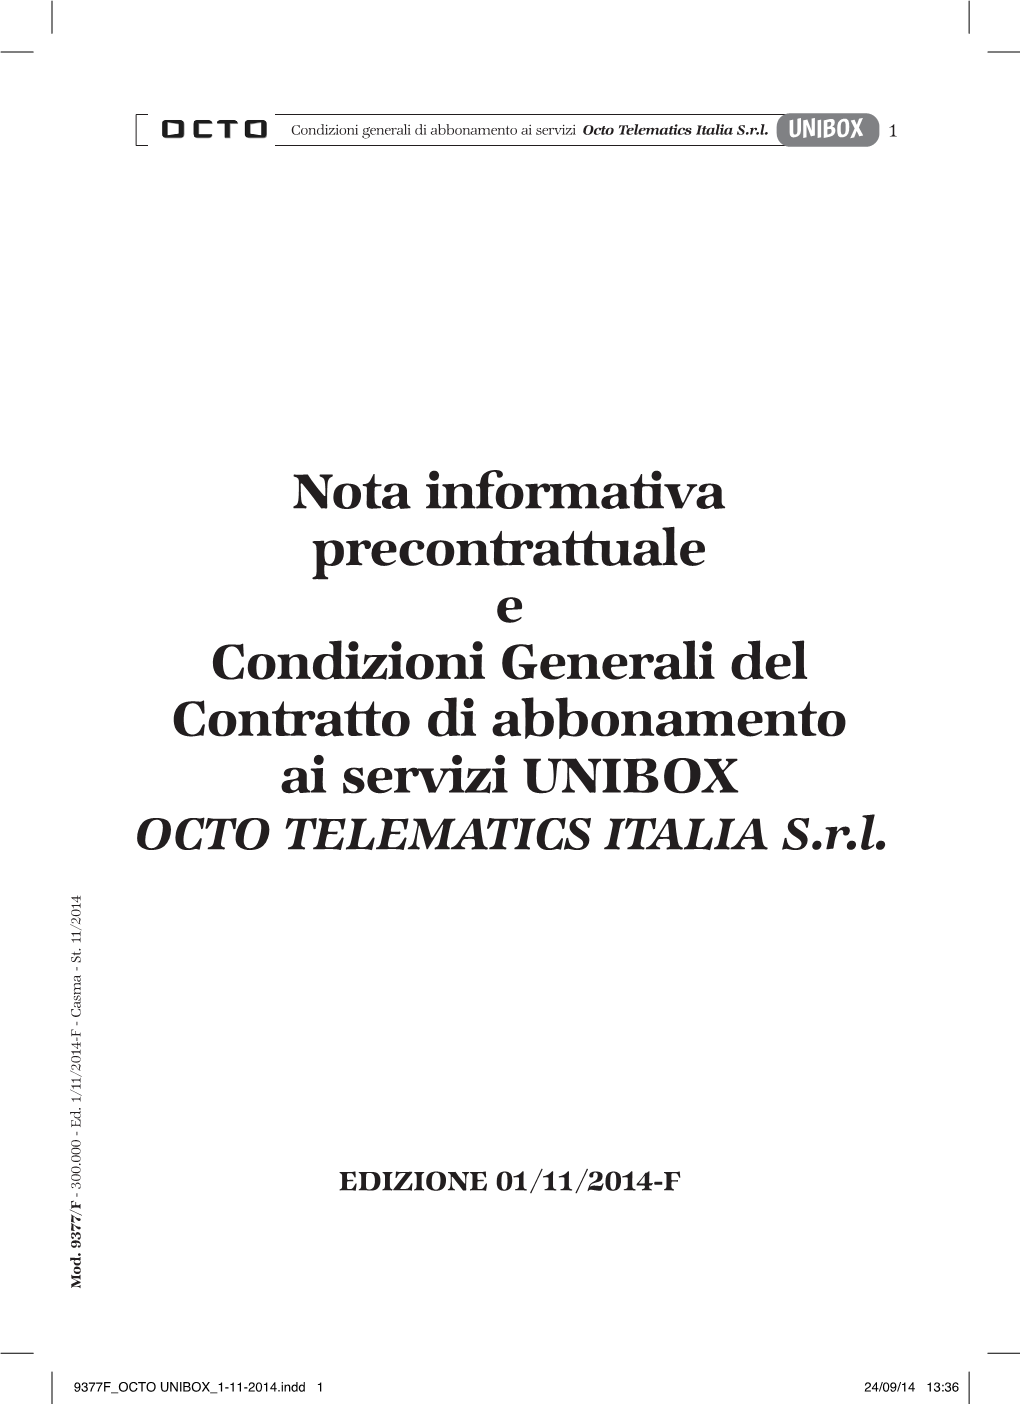 Nota Informativa Precontrattuale E Condizioni Generali Del Contratto Di Abbonamento Ai Servizi UNIBOX OCTO TELEMATICS ITALIA S.R.L